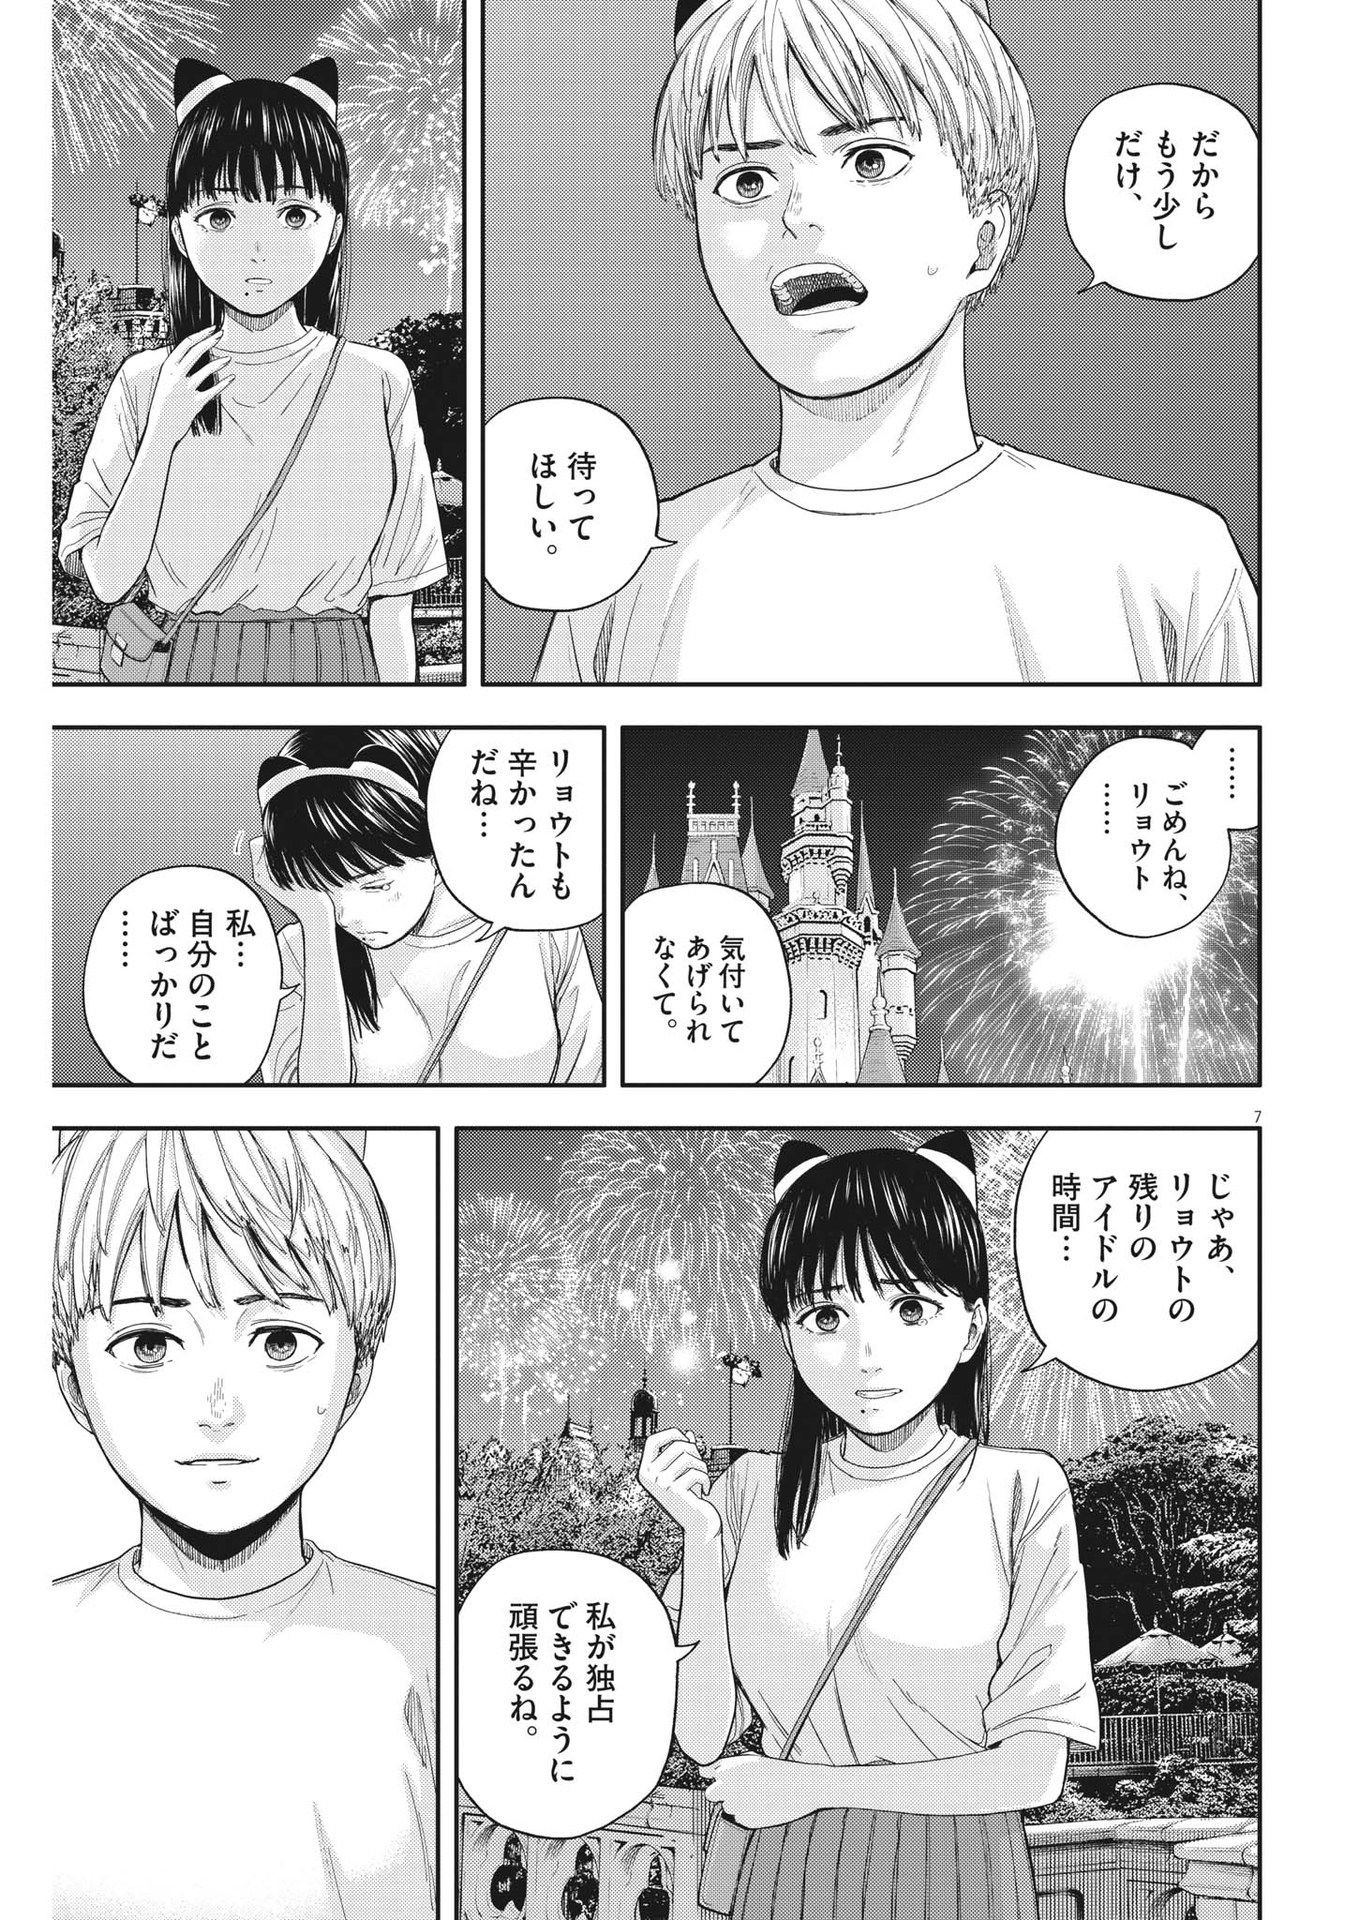 Yumenashi-sensei no Shinroshidou - Chapter 15 - Page 7